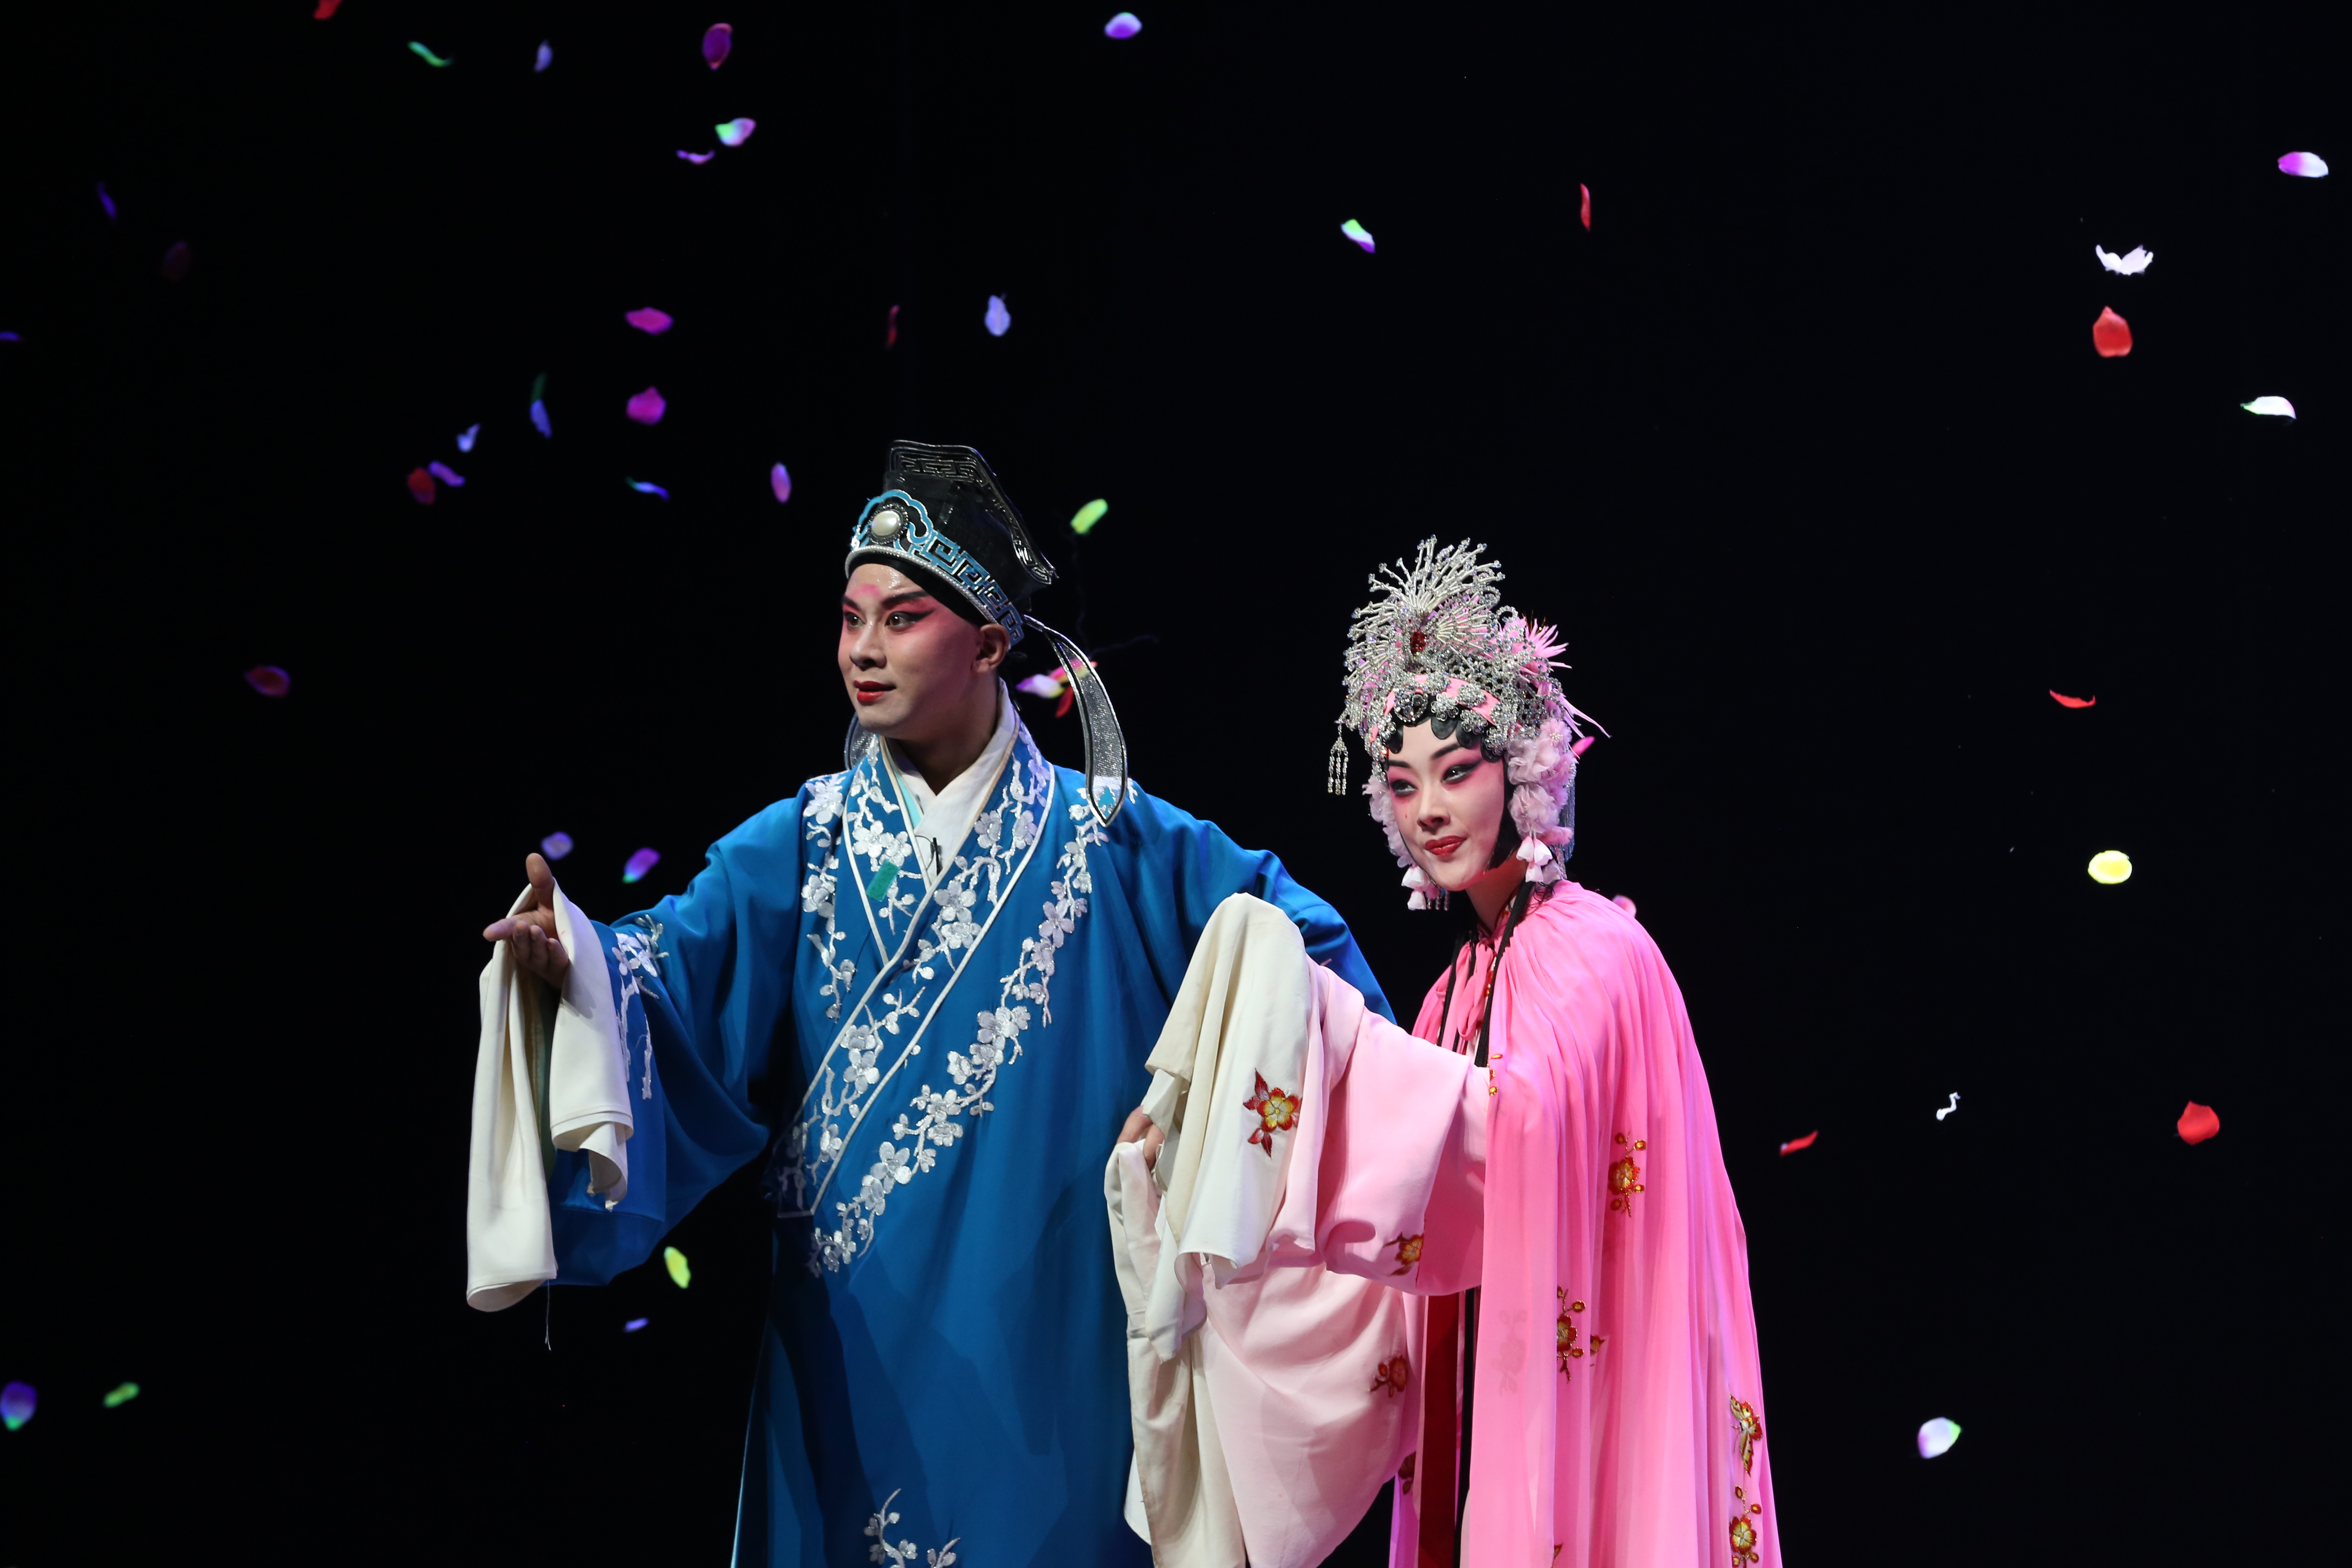 《红梅记》搬上舞台已将近十年,为了锻炼青年演员,河南豫剧院青年团不